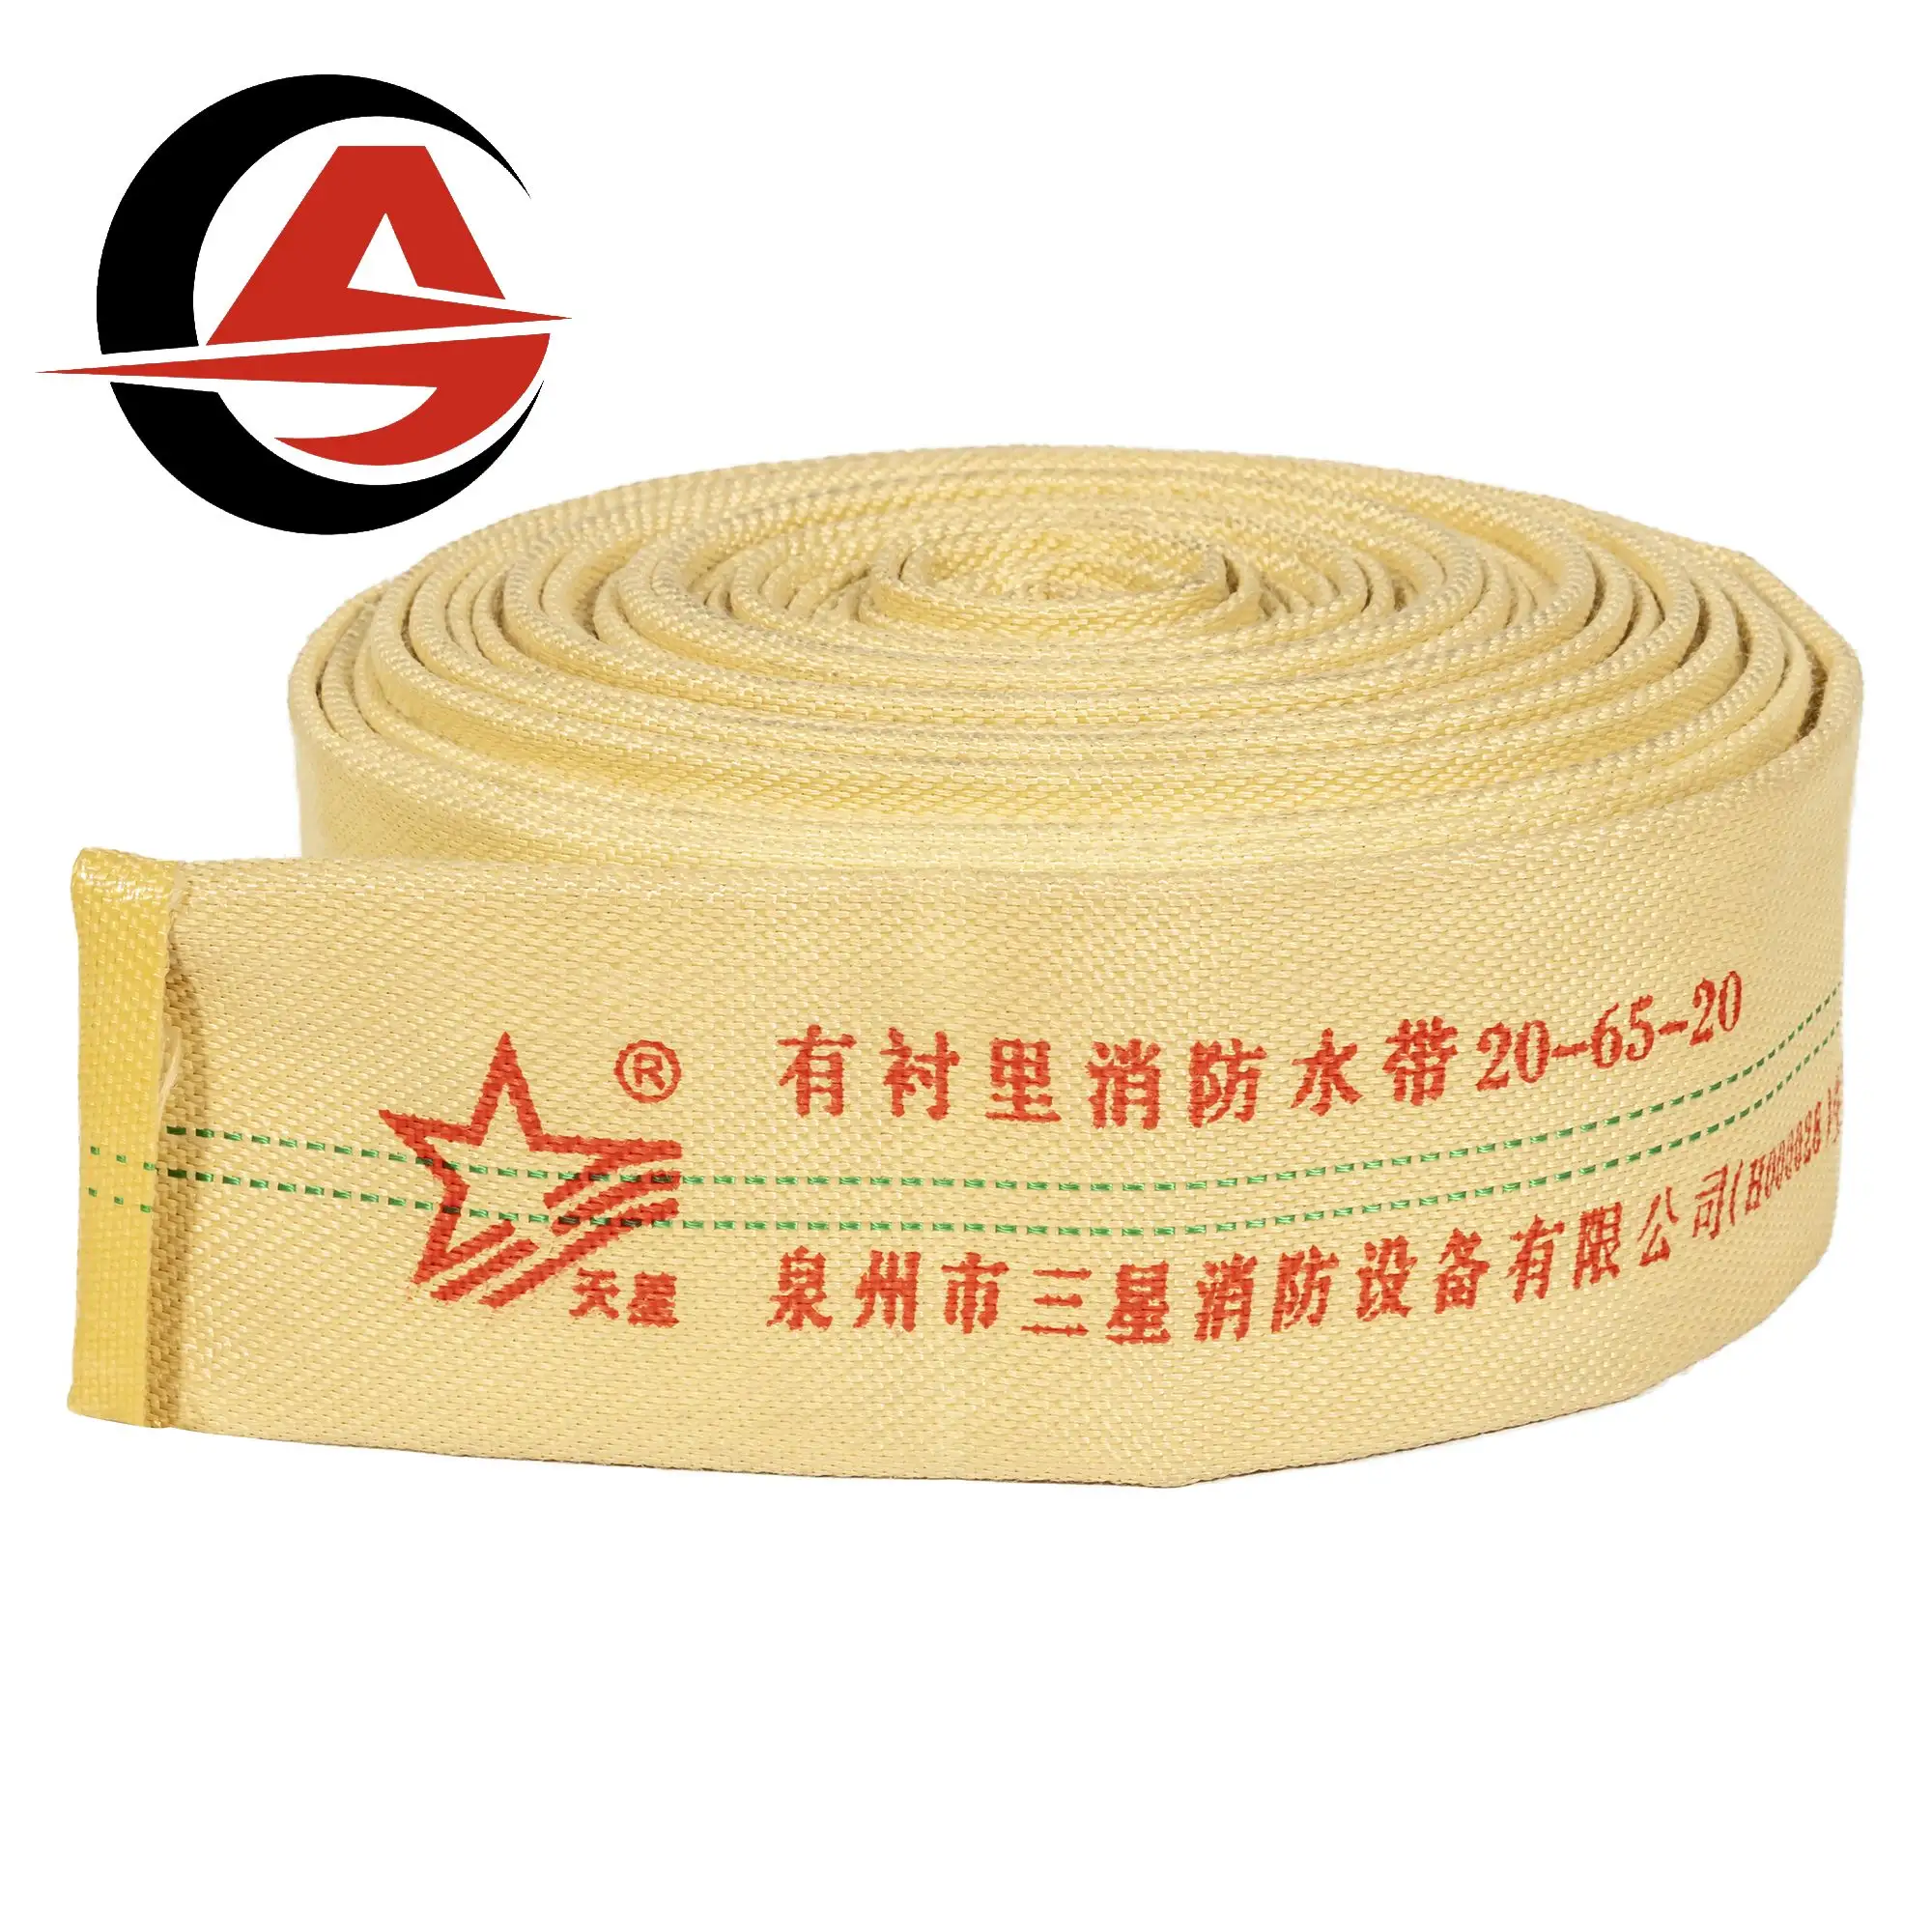 Guangmin 2 pollici 10Bar tubo foderato in PVC resistente gomma poliestere idrante tela PVC tubo antincendio per la vendita